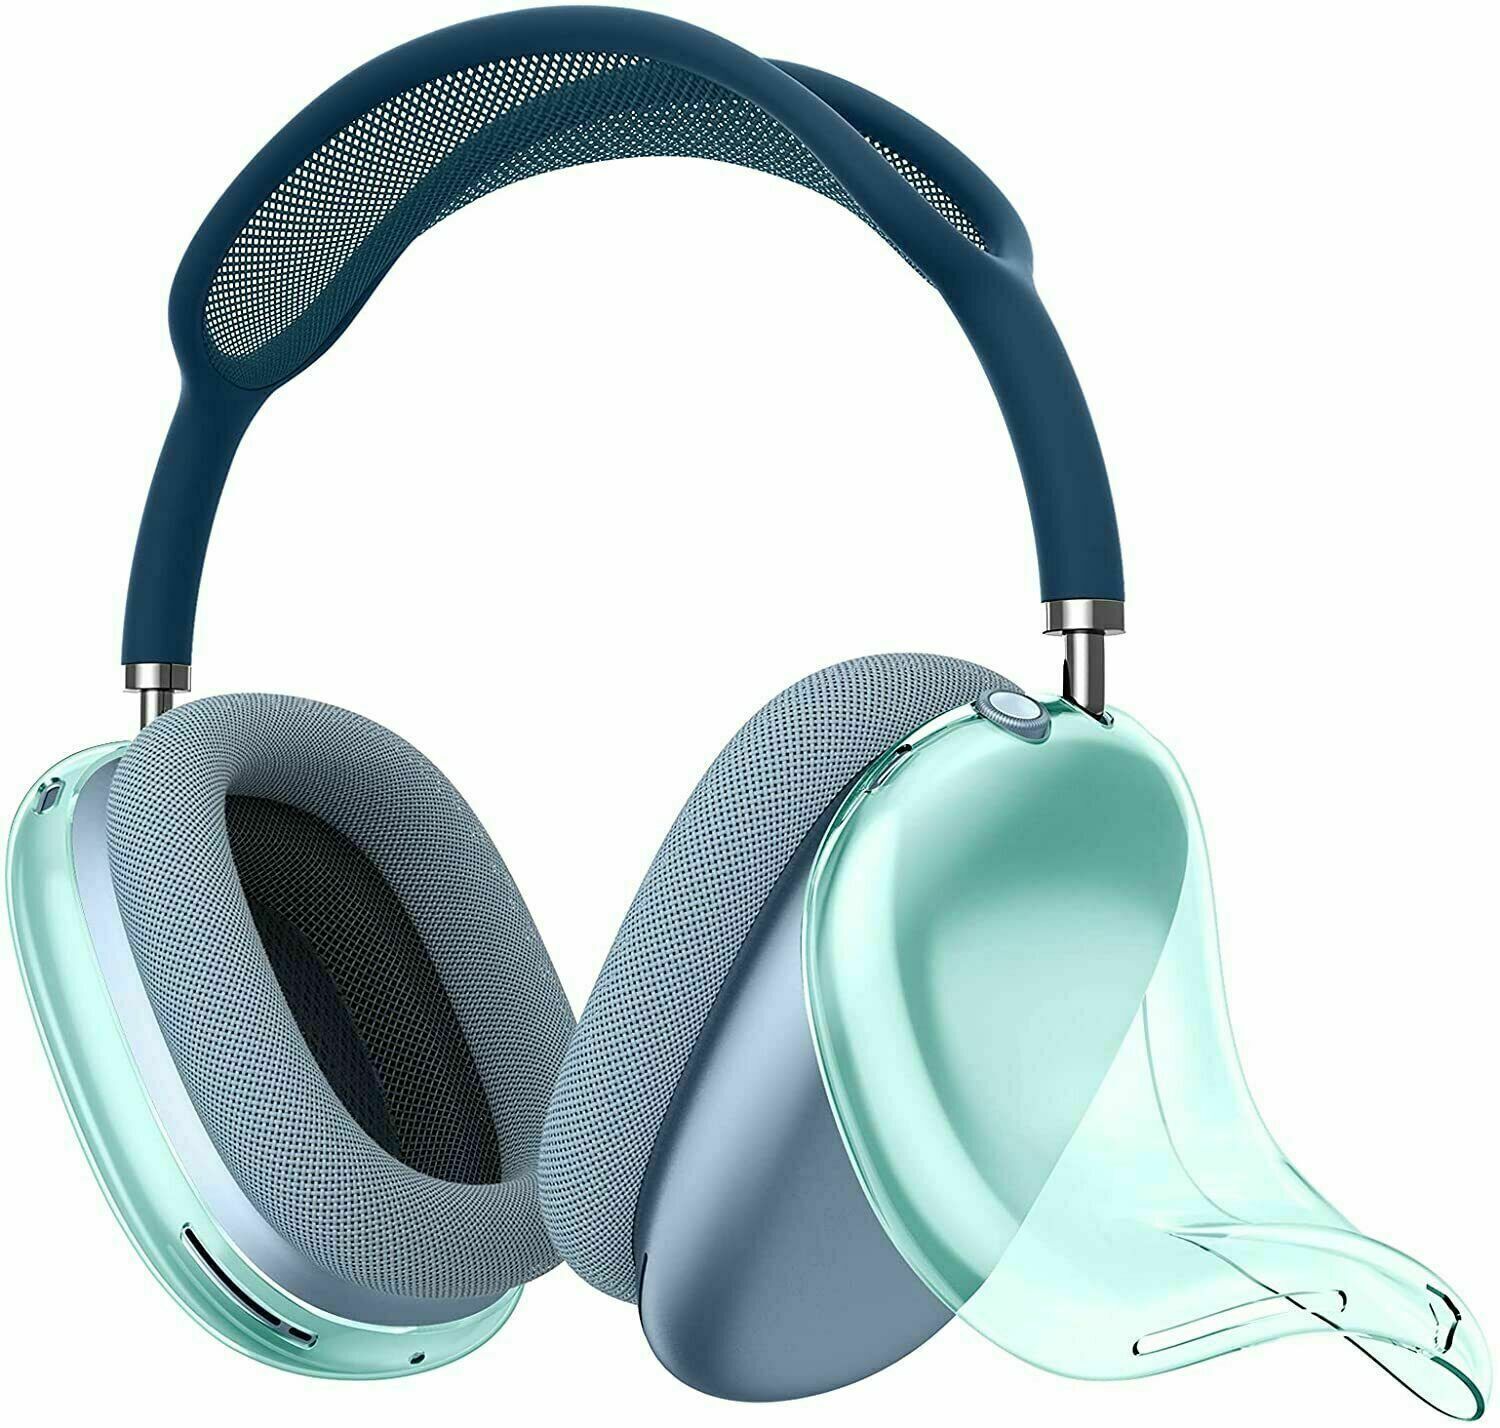 Para AirPods Max Air pods pro Maxs Fones de ouvido Almofadas Acessórios de silicone sólido de alta personalização à prova d'água Fone de ouvido protetor de plástico Estojo de viagem Armazém local